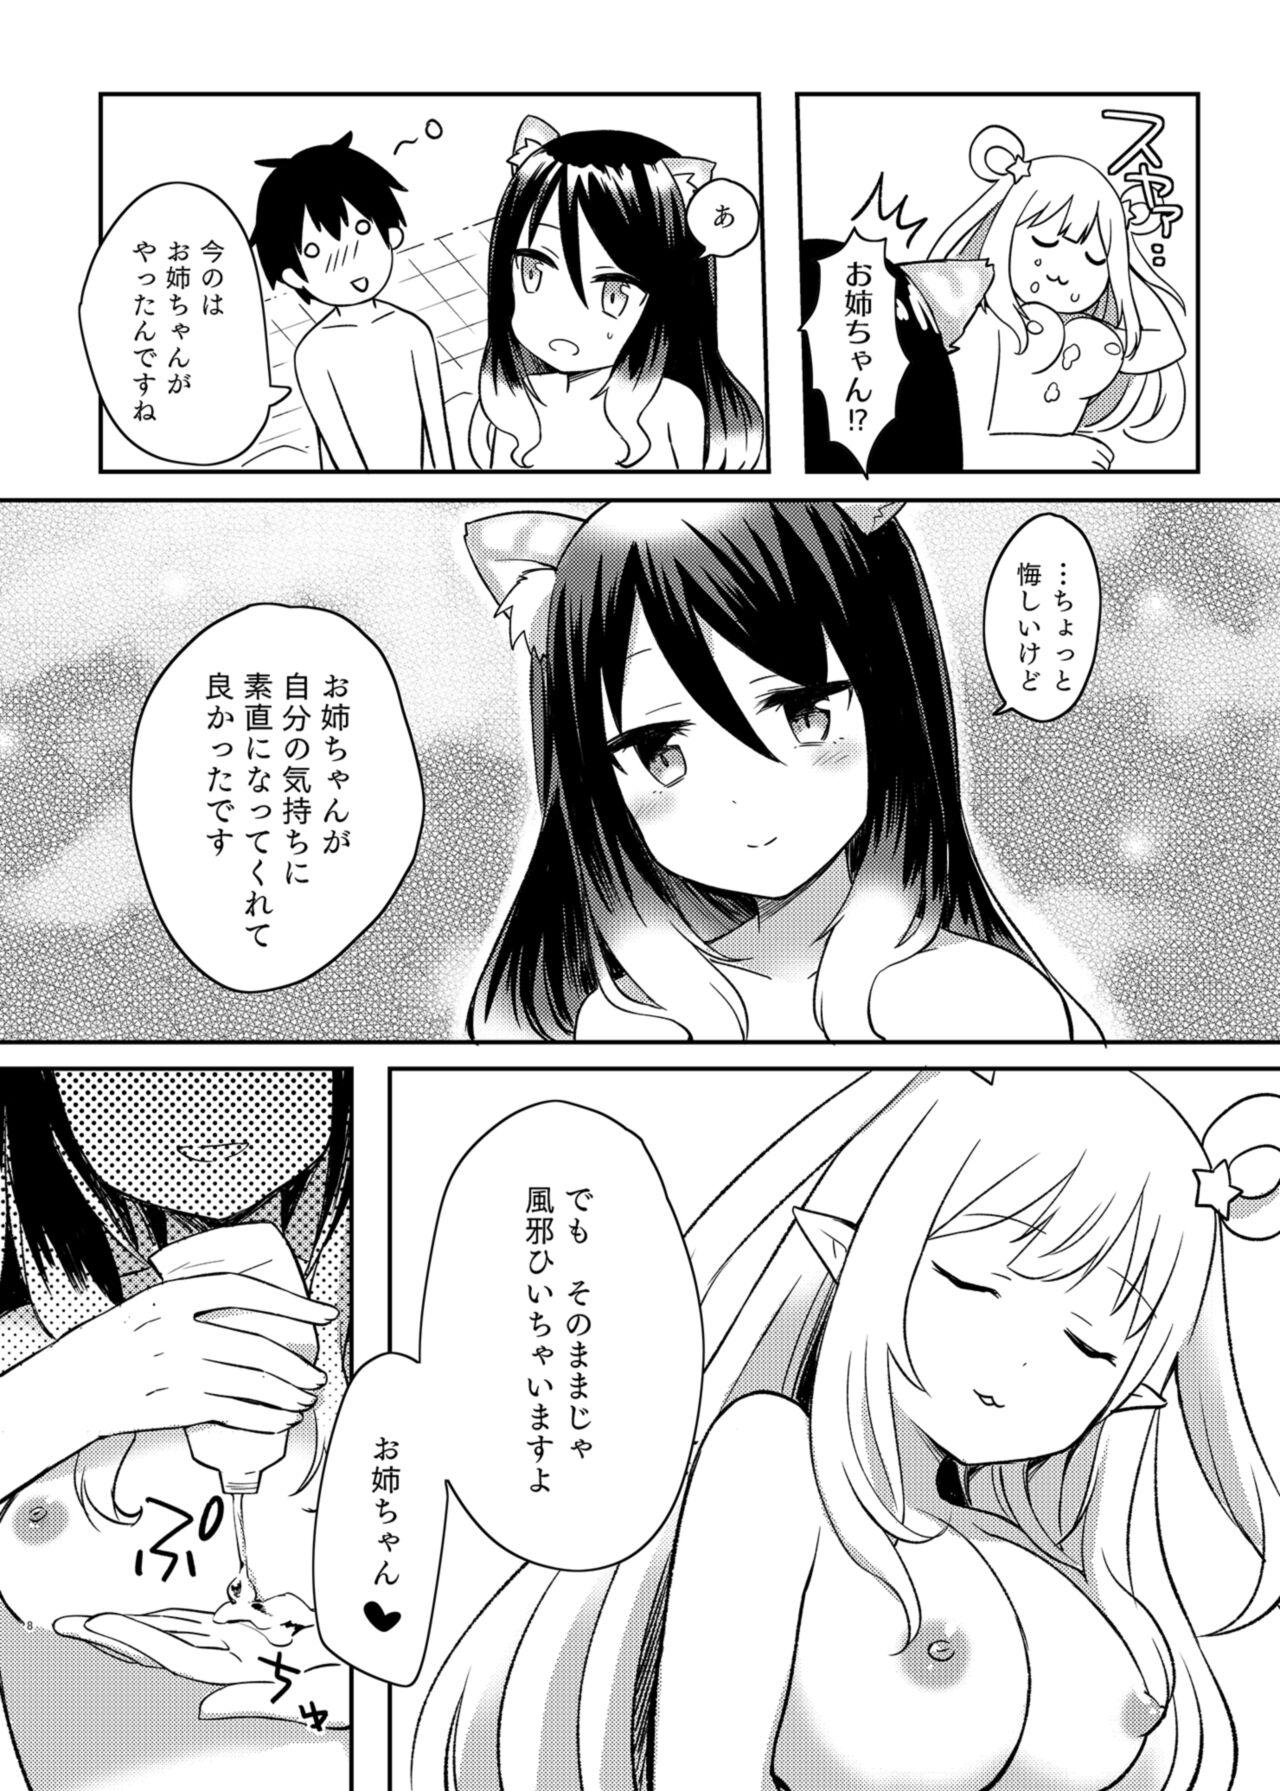 Babes Hatsune to Shiori no Yukemuri Daisakusen - Princess connect Gaydudes - Page 8